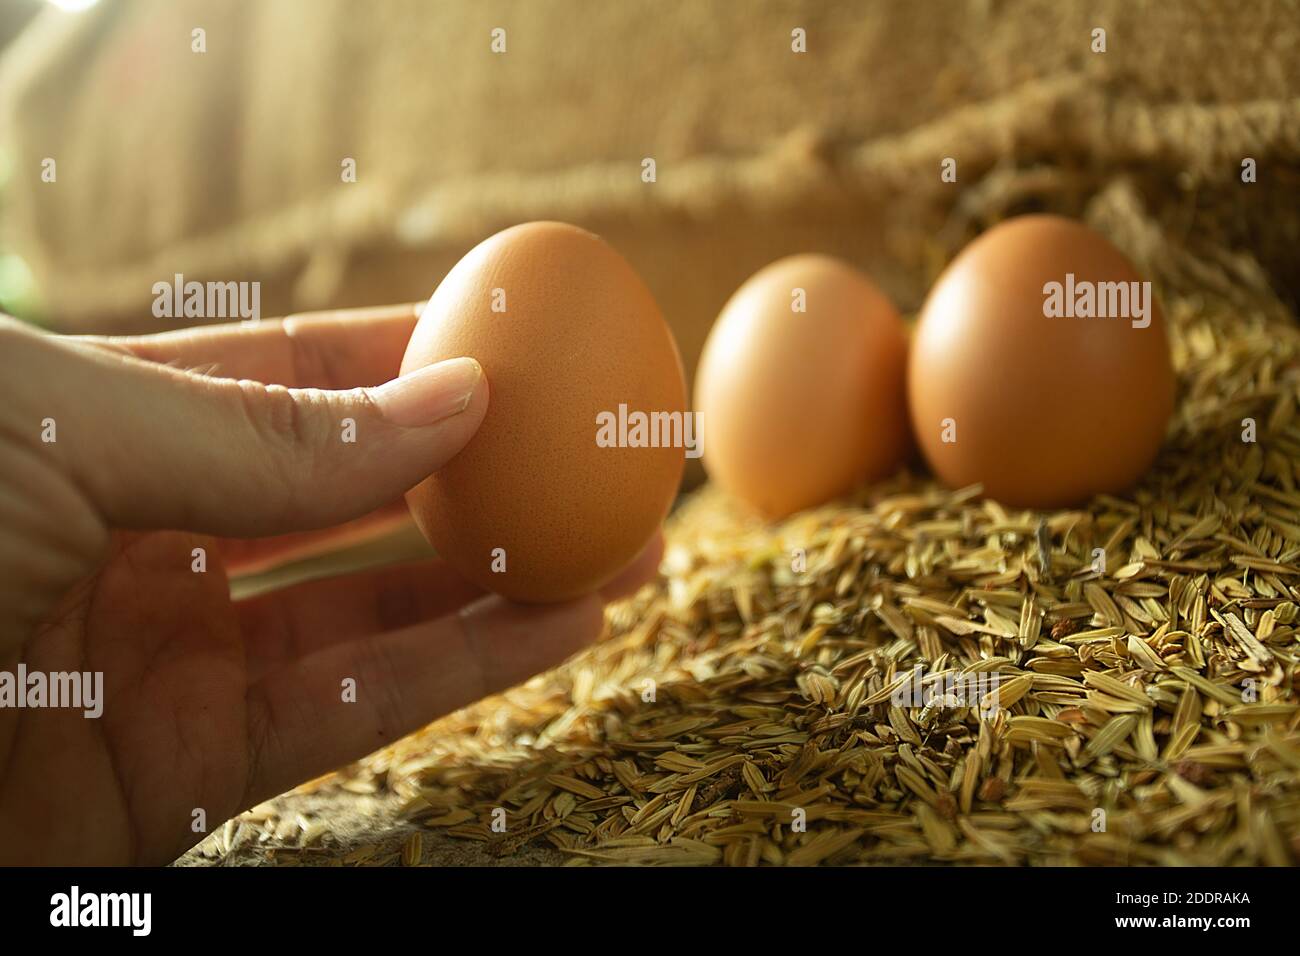 Die Hand des Mannes pflückt ein Ei aus der Schale zum Kochen. Foto mit goldenem Licht. Stockfoto